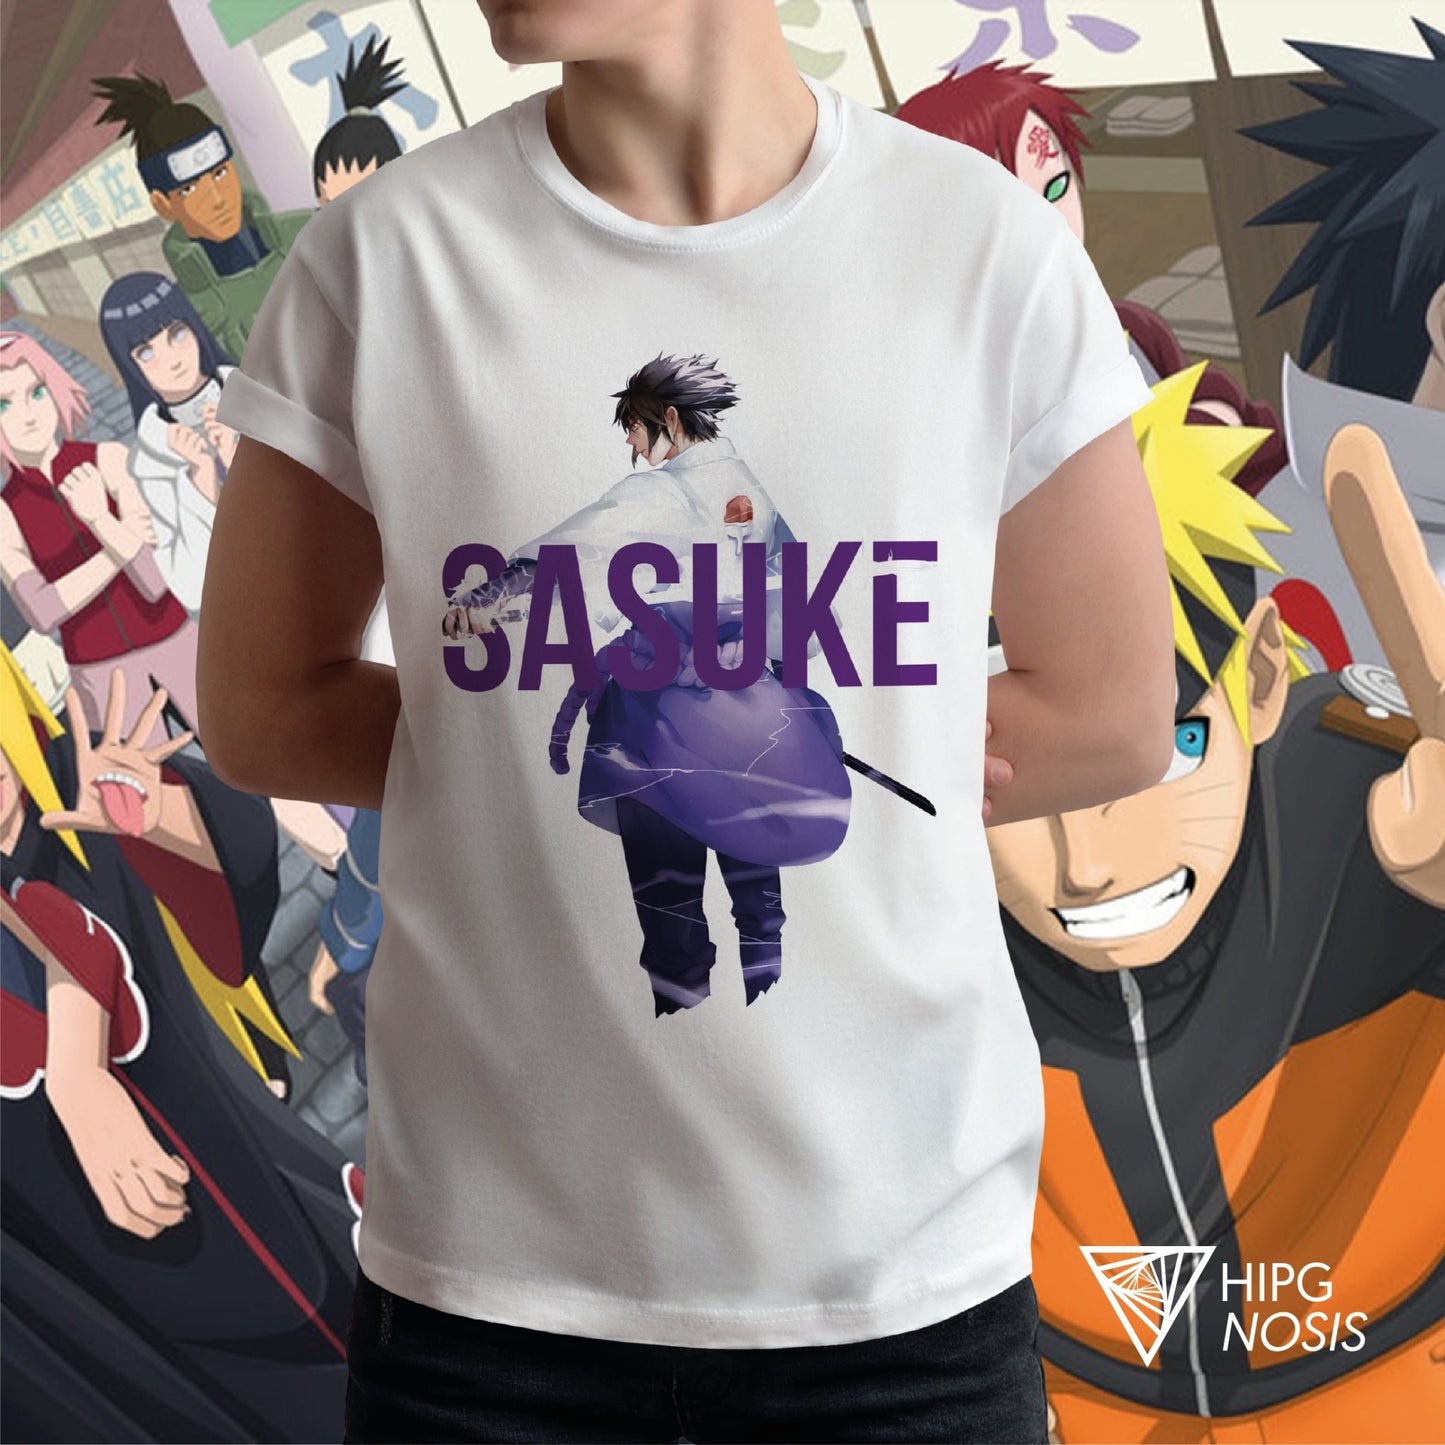 Naruto Sasuke 01 - Hipgnosis